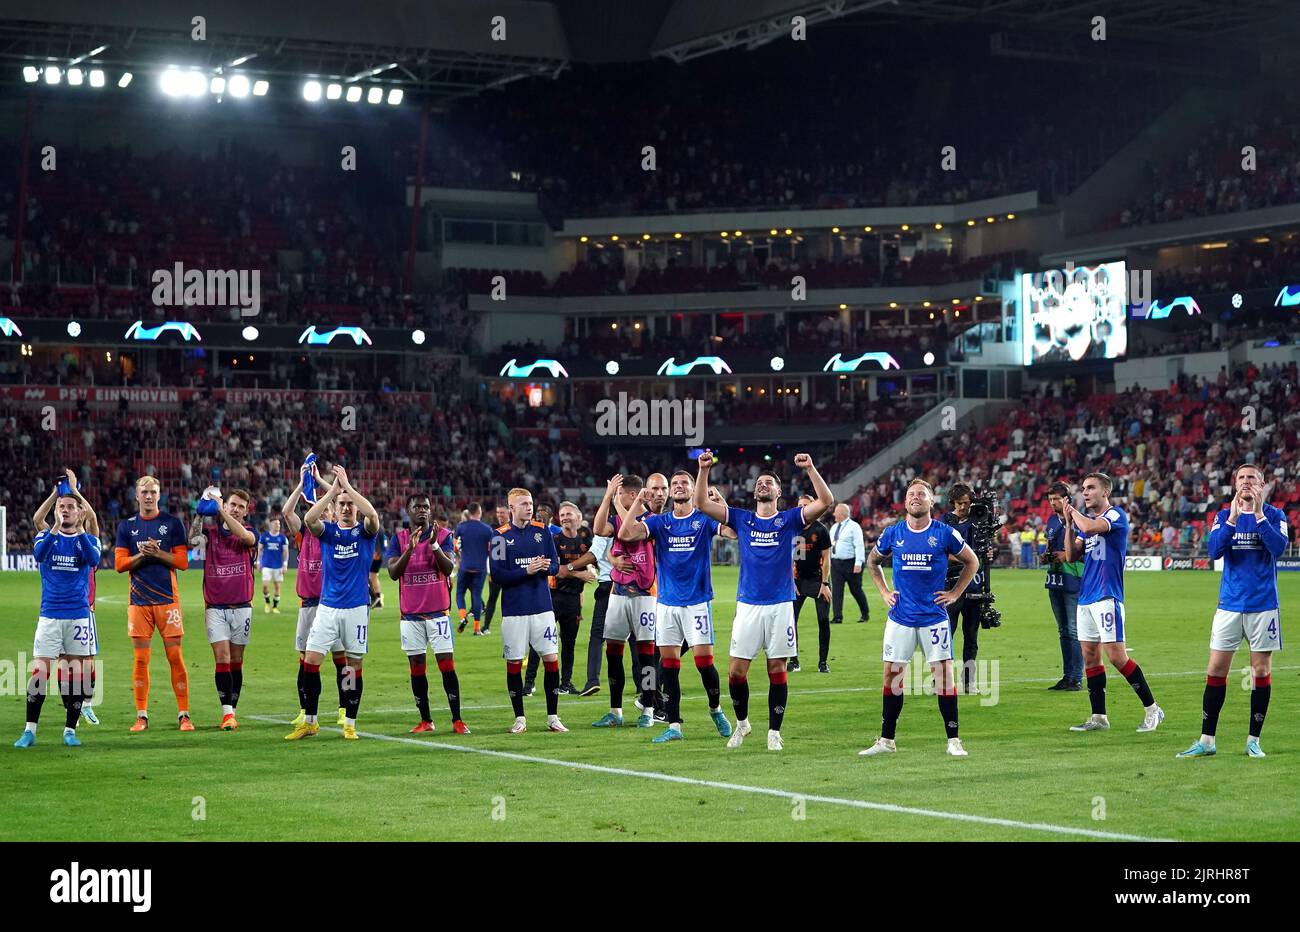 Die Rangers-Spieler und -Mitarbeiter applaudieren den Fans nach dem finalen Pfeifen während des UEFA Champions League-Qualifikationsspiels im PSV-Stadion in Eindhoven. Bilddatum: Mittwoch, 24. August 2022. Stockfoto